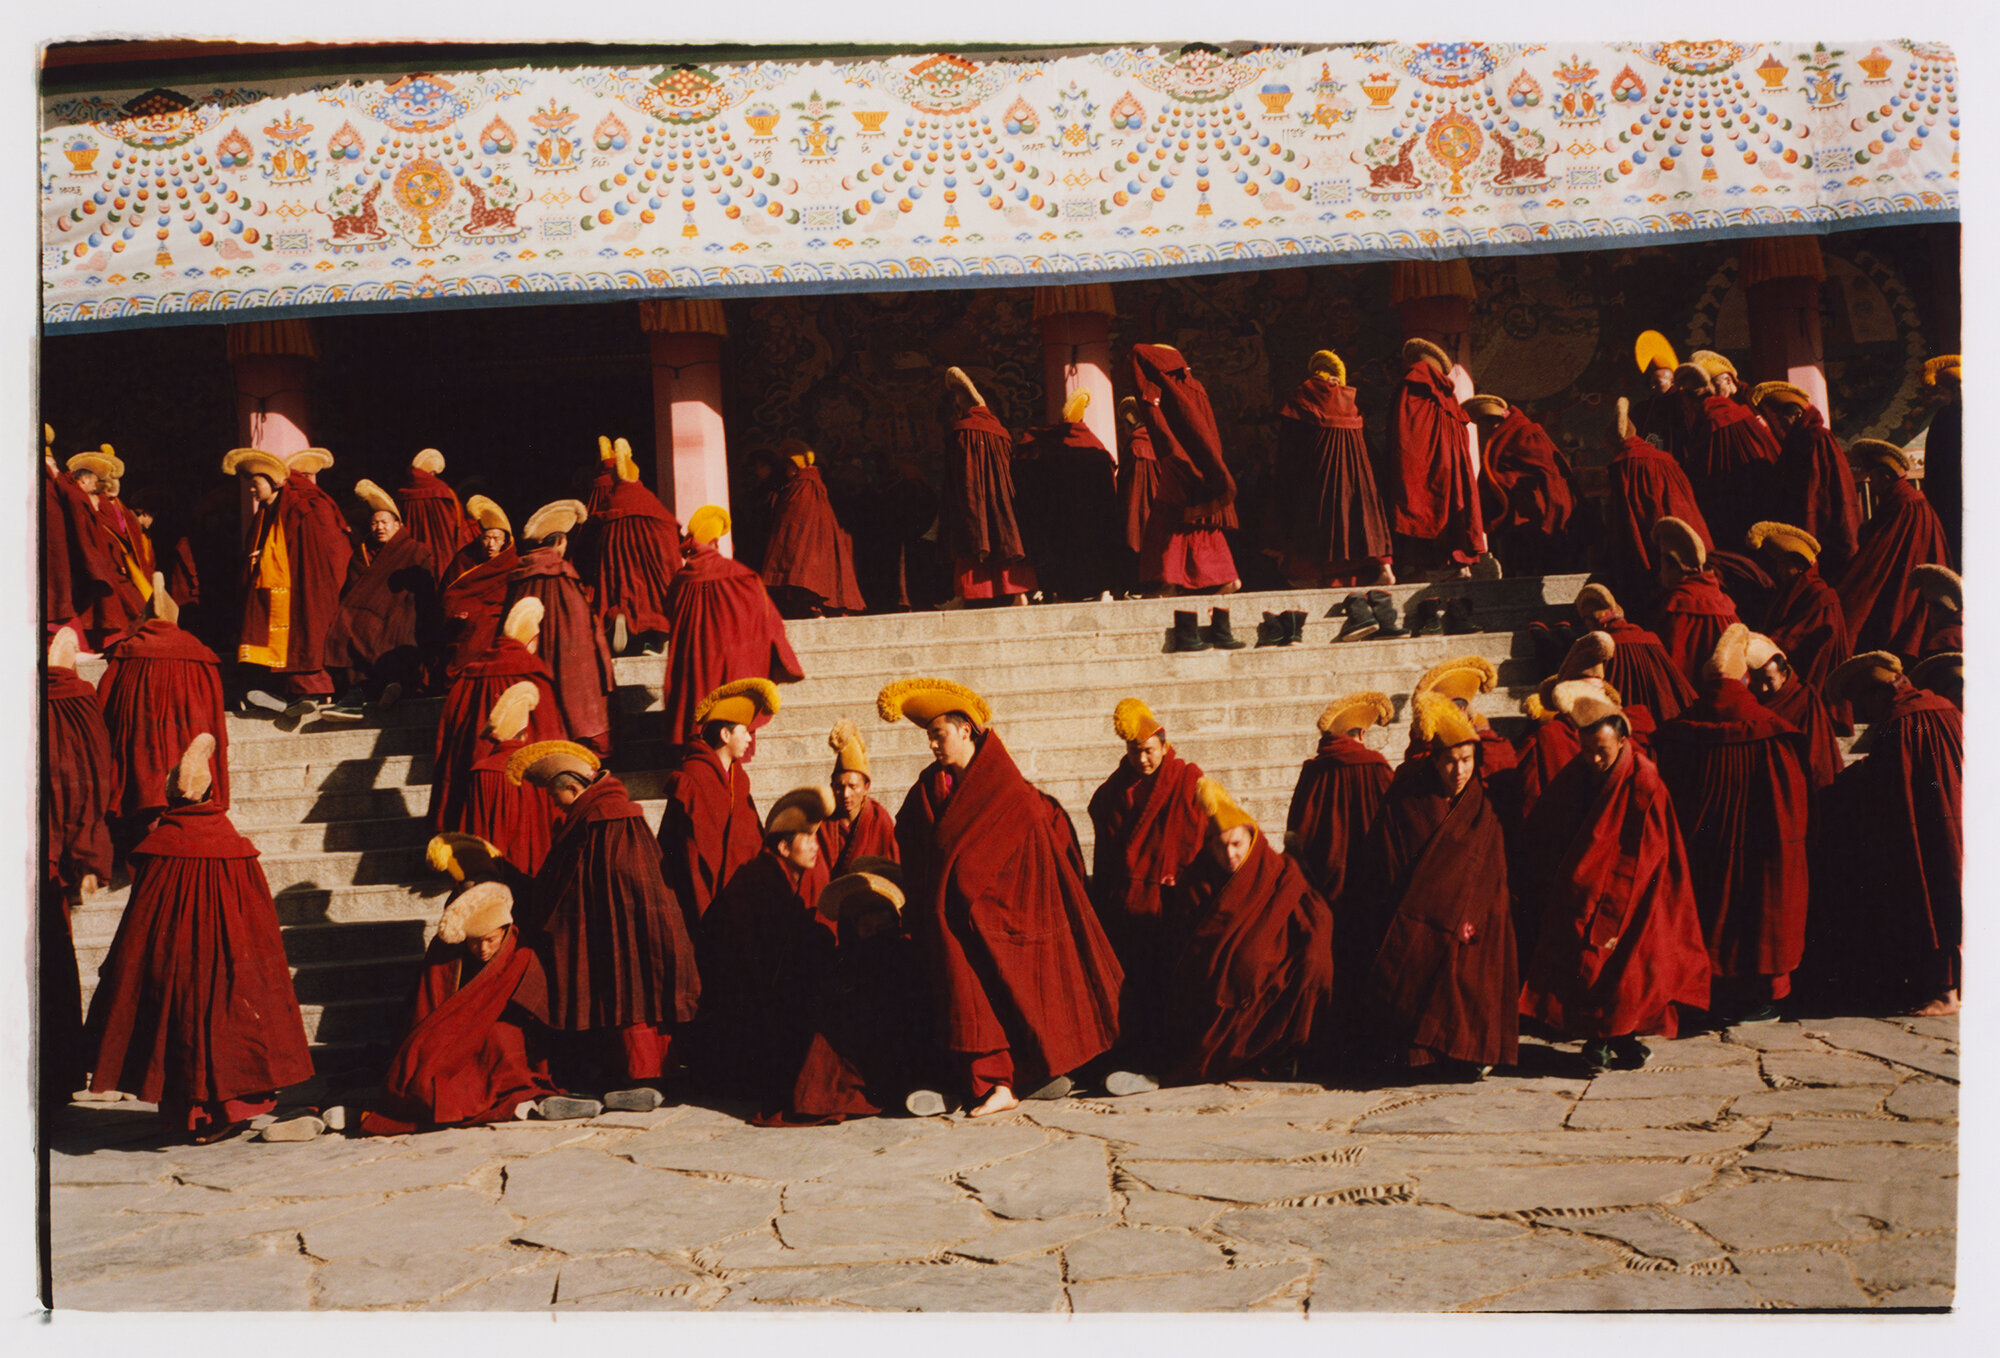 Yellow Hats at Labrang Monastery II, Xiahe, Tibet, 2019